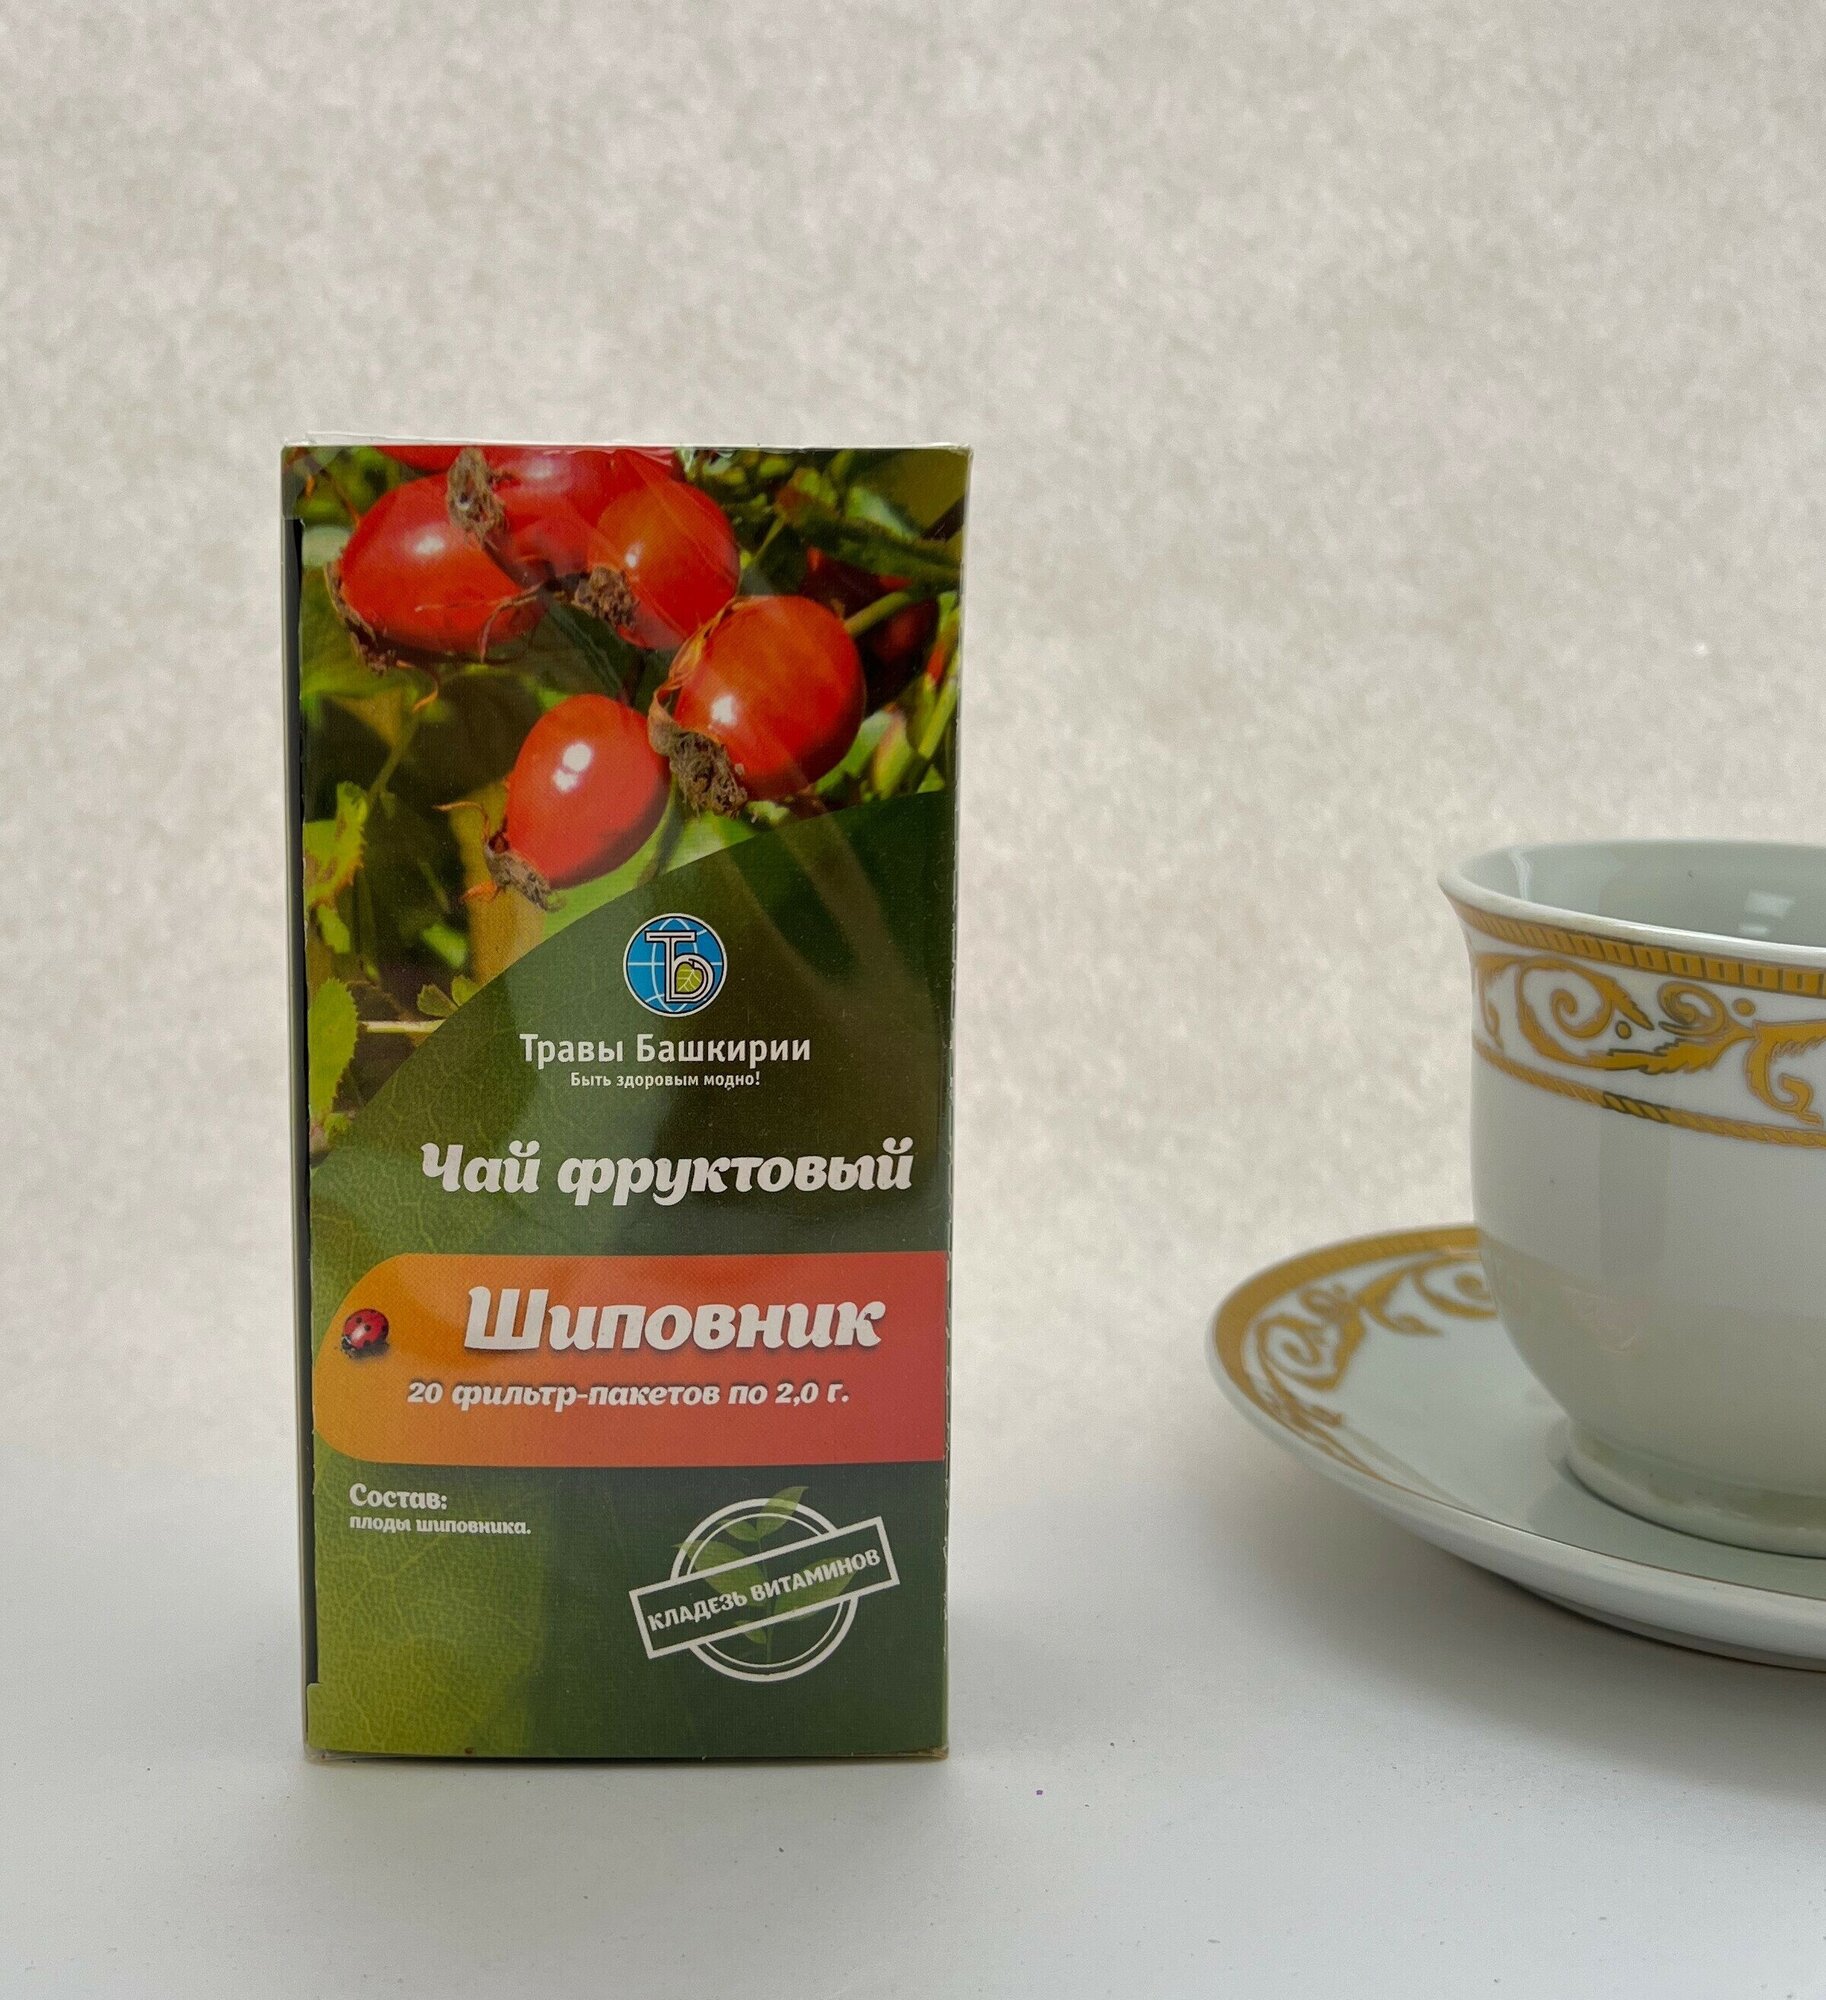 Шиповник - чай для восстановления иммунитета